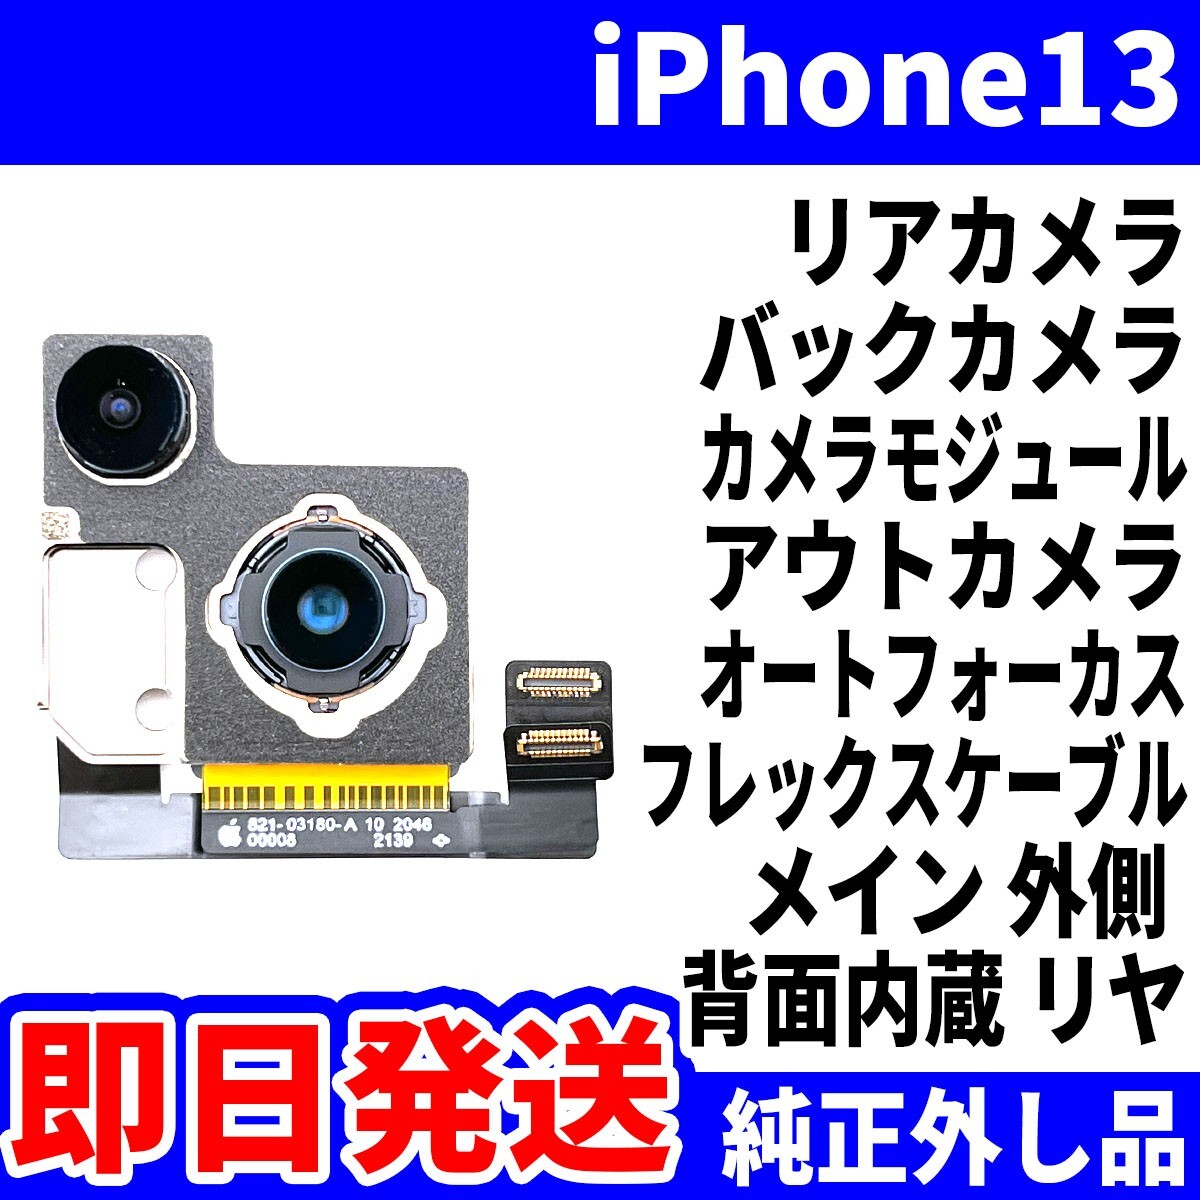 即日 iPhone13 リアカメラ 純正外し品 バックカメラ メインカメラ アウトカメラ 内蔵アイフォンカメラ 背面カメラ 交換 パーツ 修理 部品